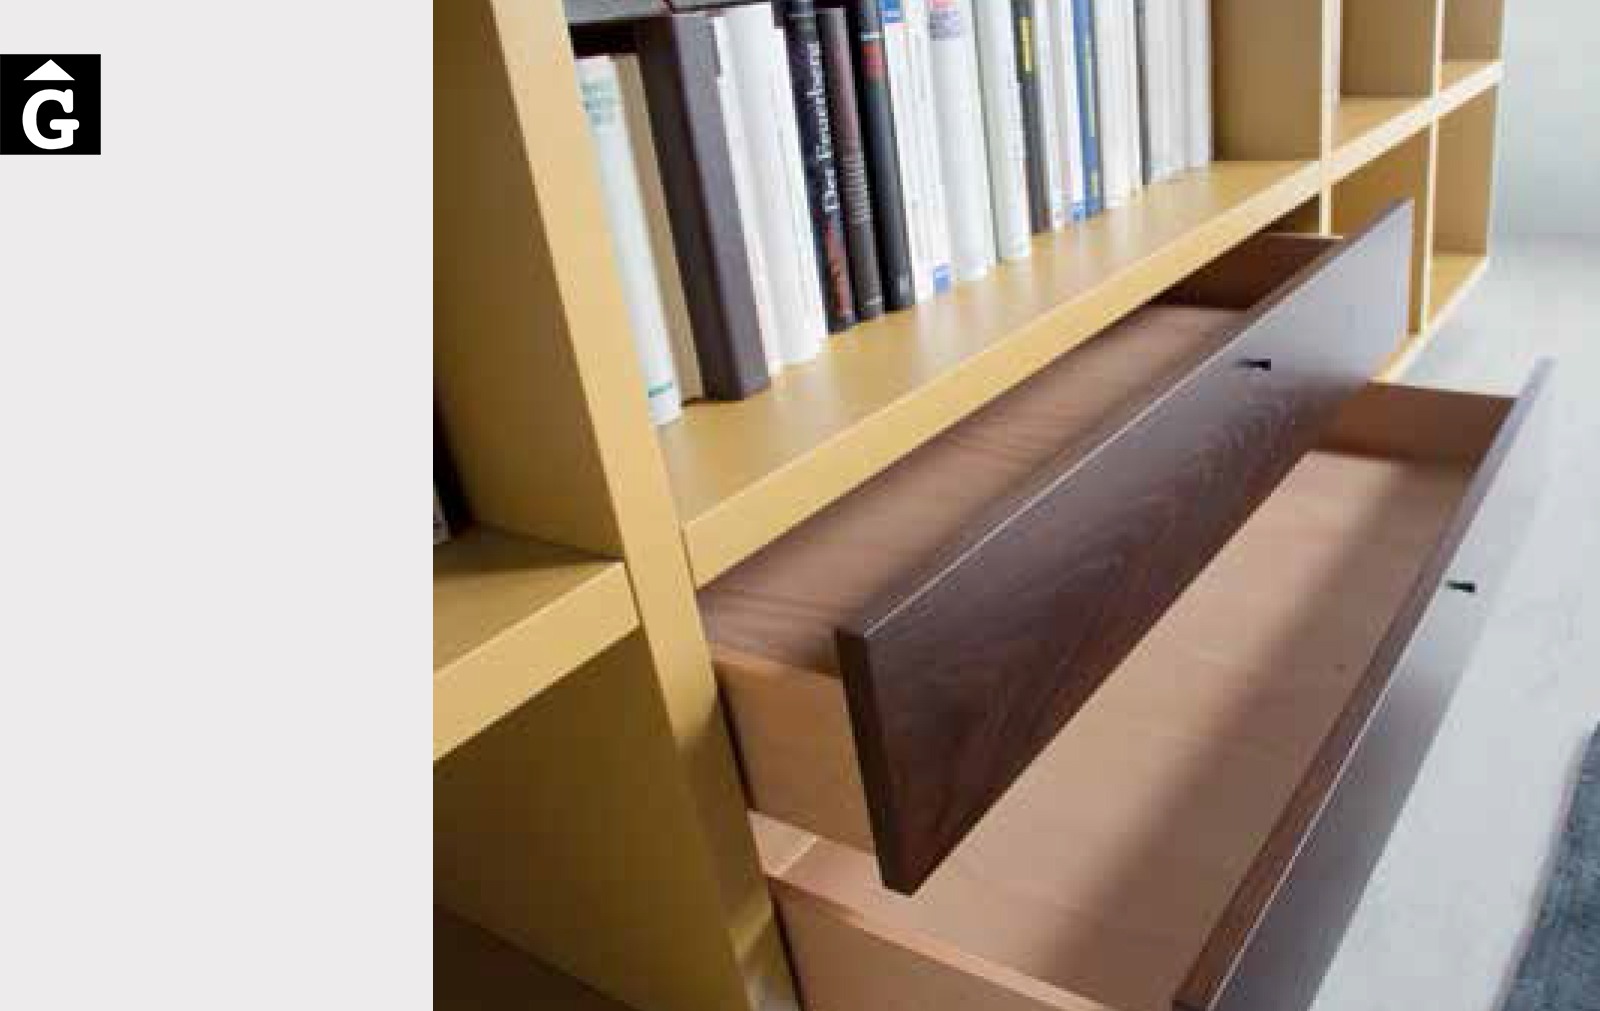 Detall llibreria 1 Loyra muebles by mobles Gifreu Idees per la llar moble de qualitat